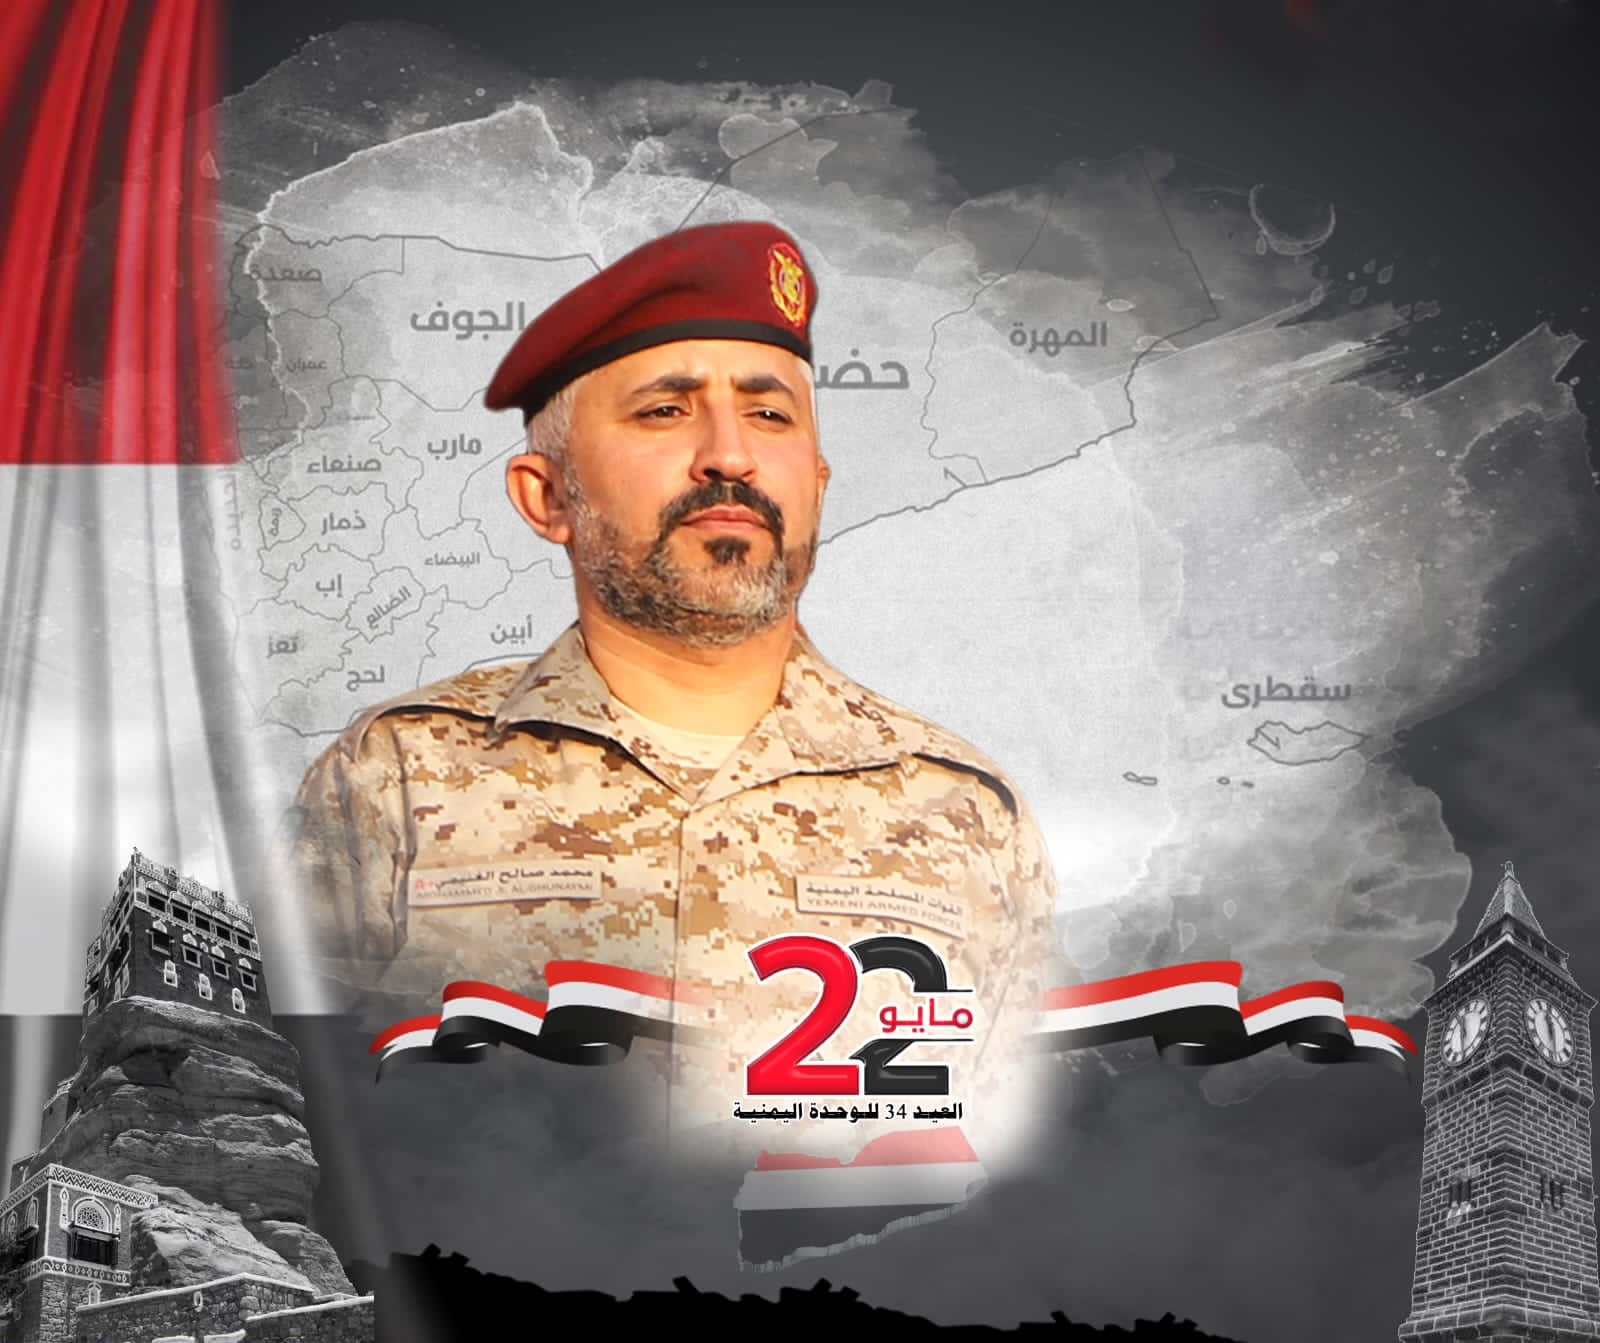 العميد الغنيمي يهنئ القيادة العسكرية وأبناء الشعب اليمني بمناسبة عيد الوحدة 22 مايو